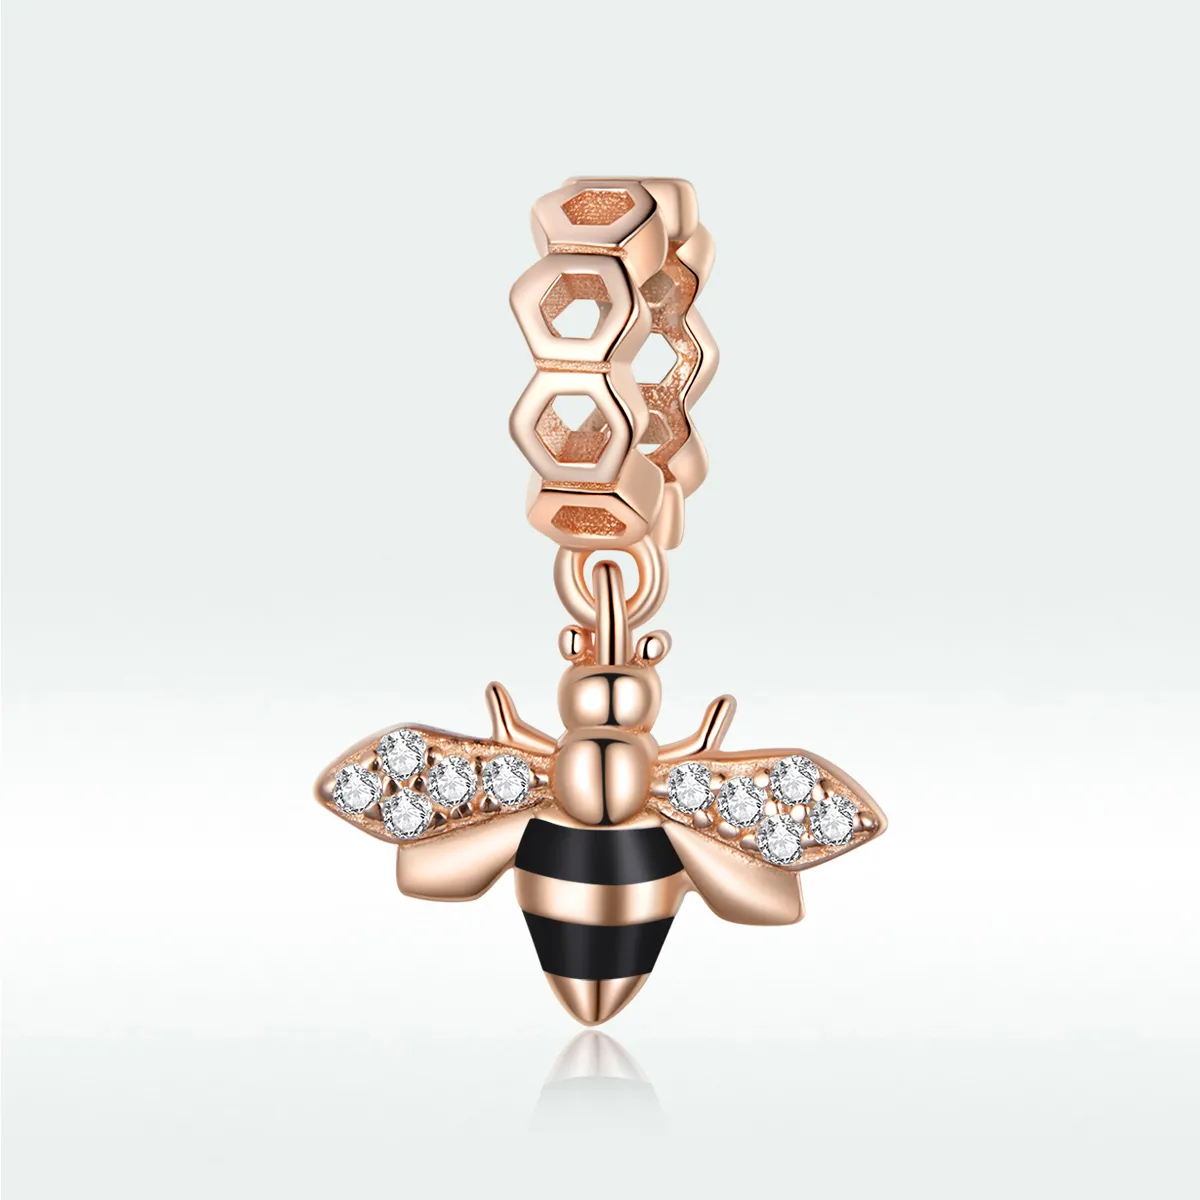 Talisman pandantiv Tip Pandora cu Mica albina din aur rose - BSC370